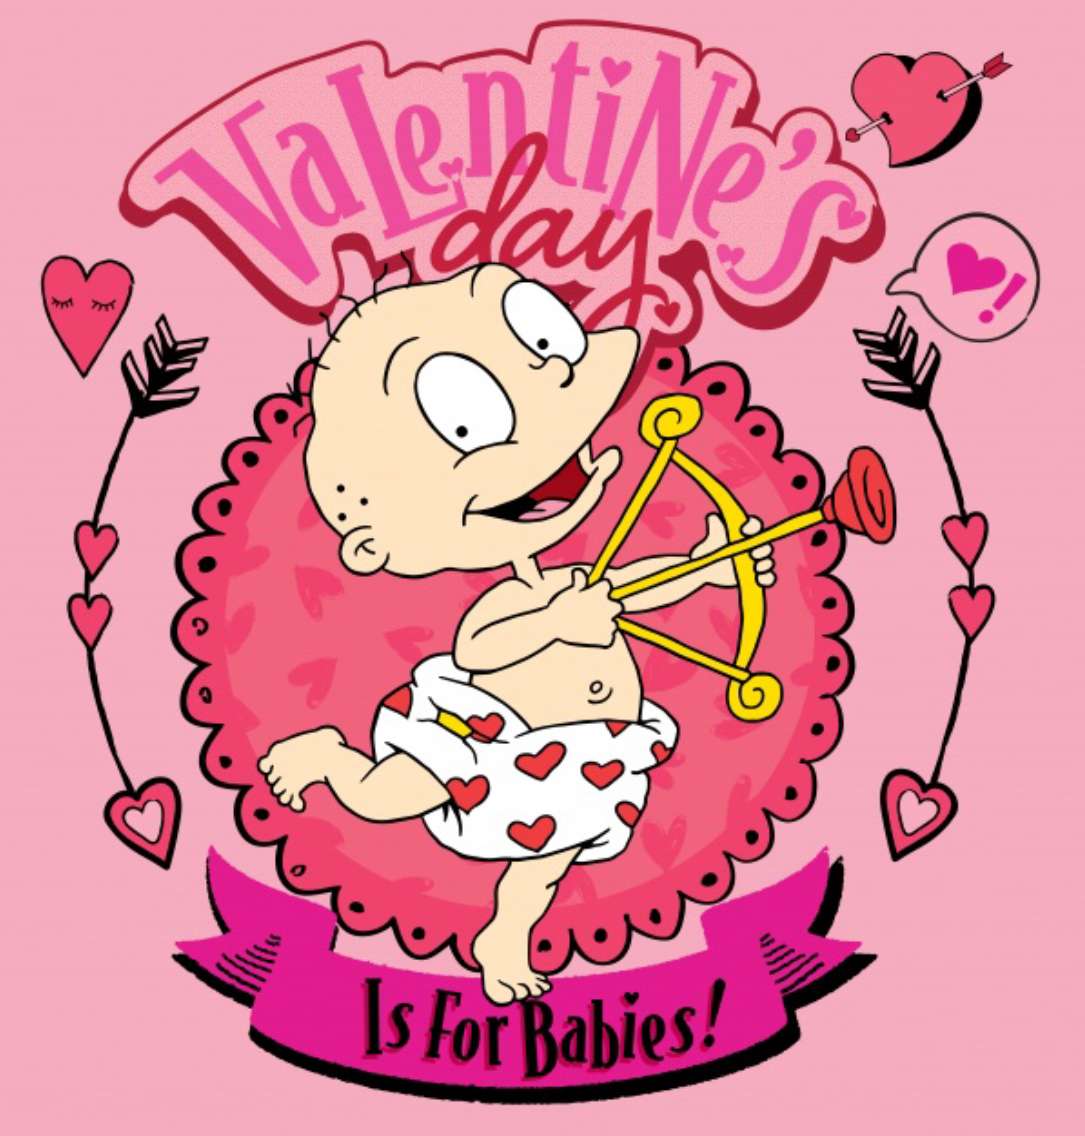 La Saint-Valentin, c'est pour les bébés ! ❤️❤️❤️❤️ puzzle en ligne